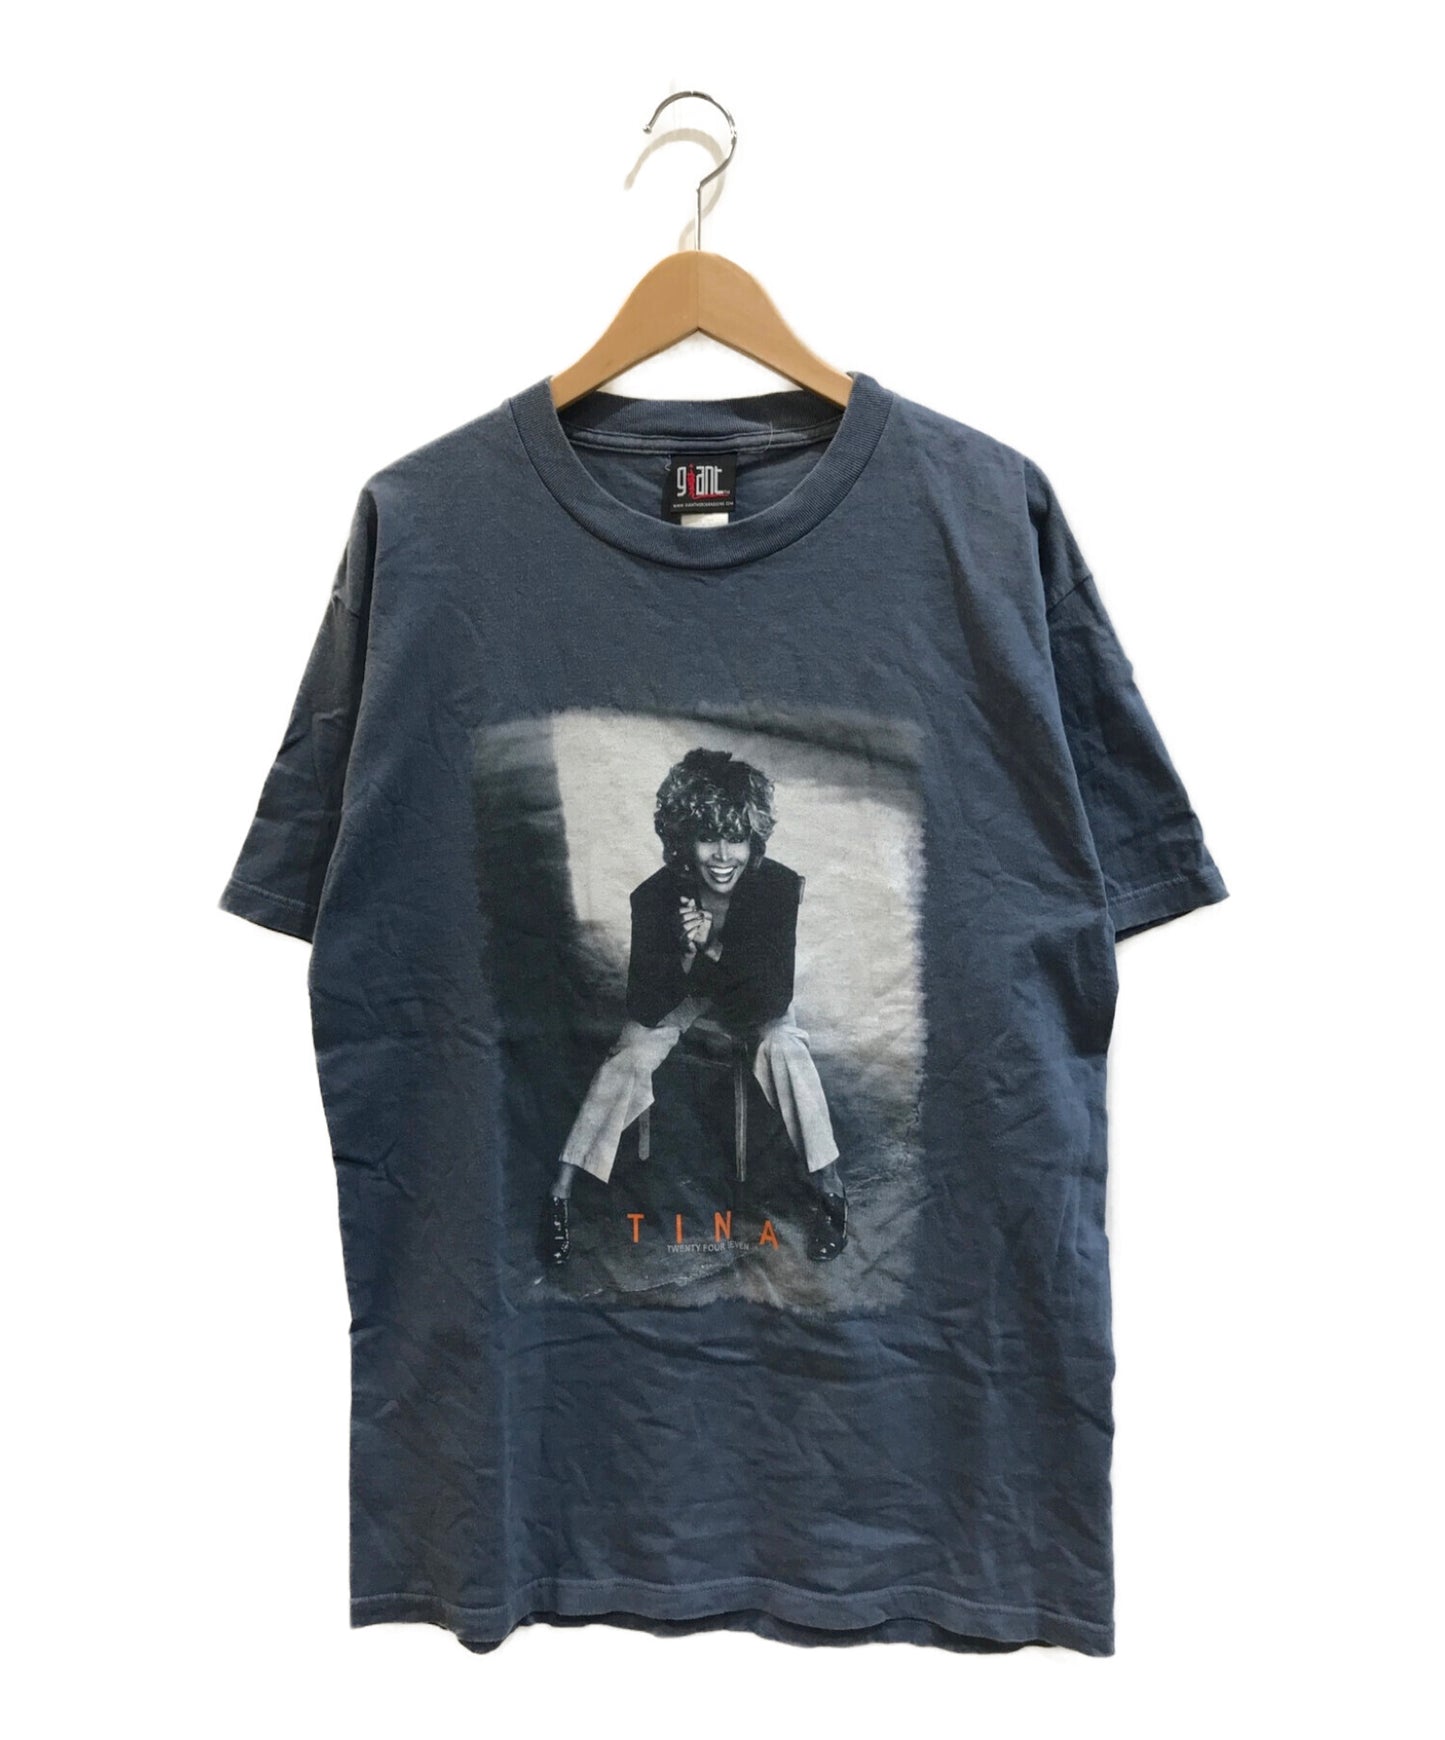 [复古衣服]蒂娜·特纳艺术家T恤